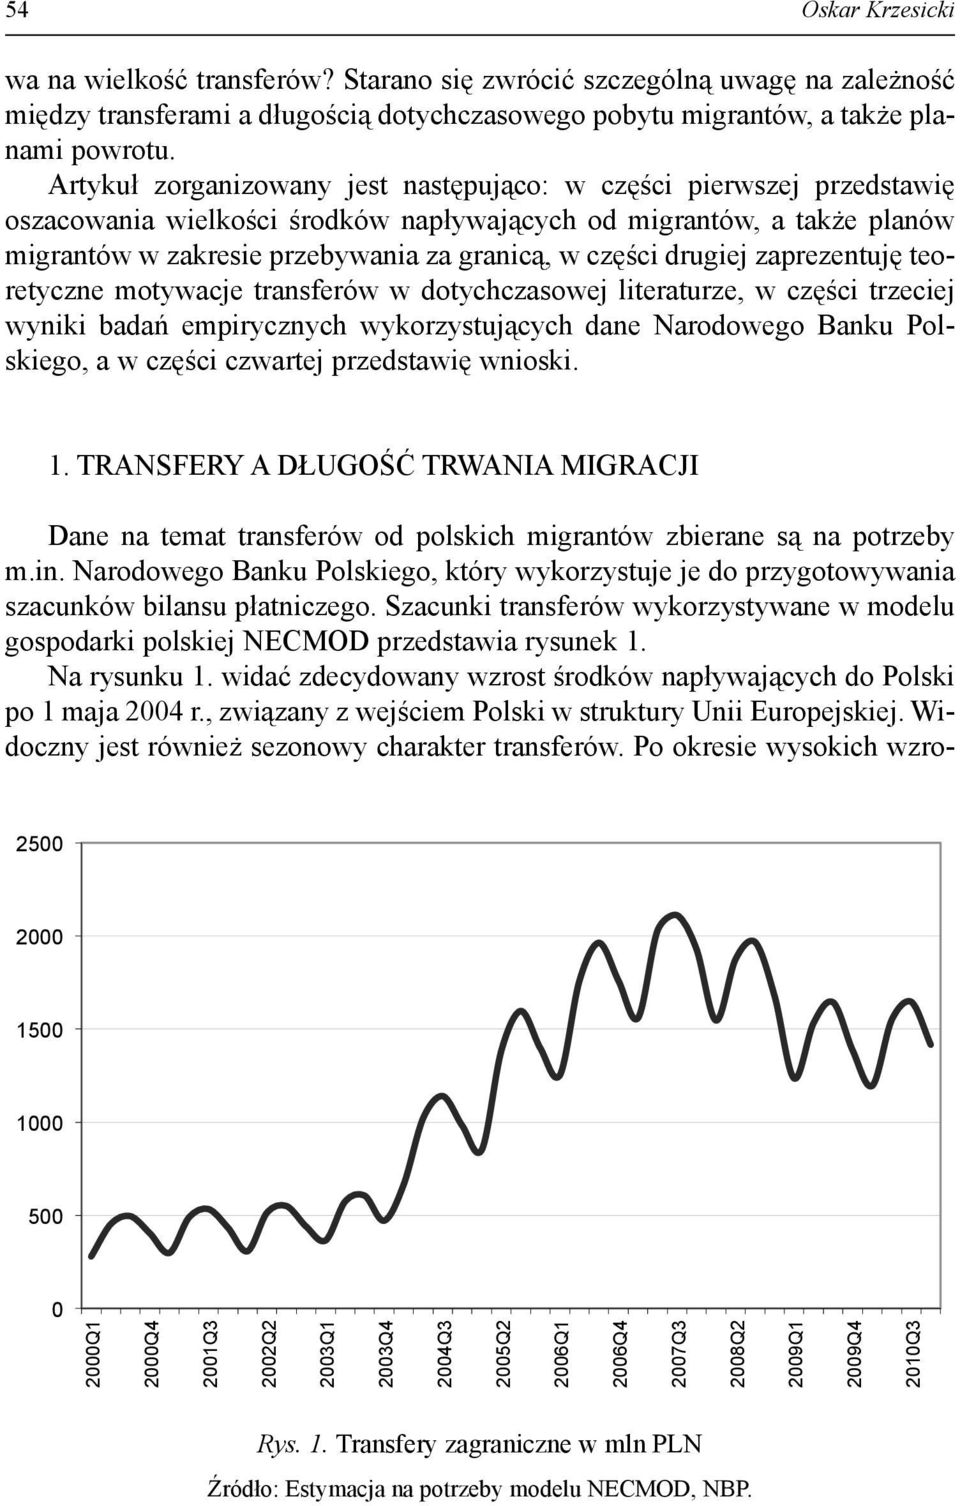 drugiej zaprezentuję teoretyczne motywacje transferów w dotychczasowej literaturze, w części trzeciej wyniki badań empirycznych wykorzystujących dane Narodowego Banku Polskiego, a w części czwartej